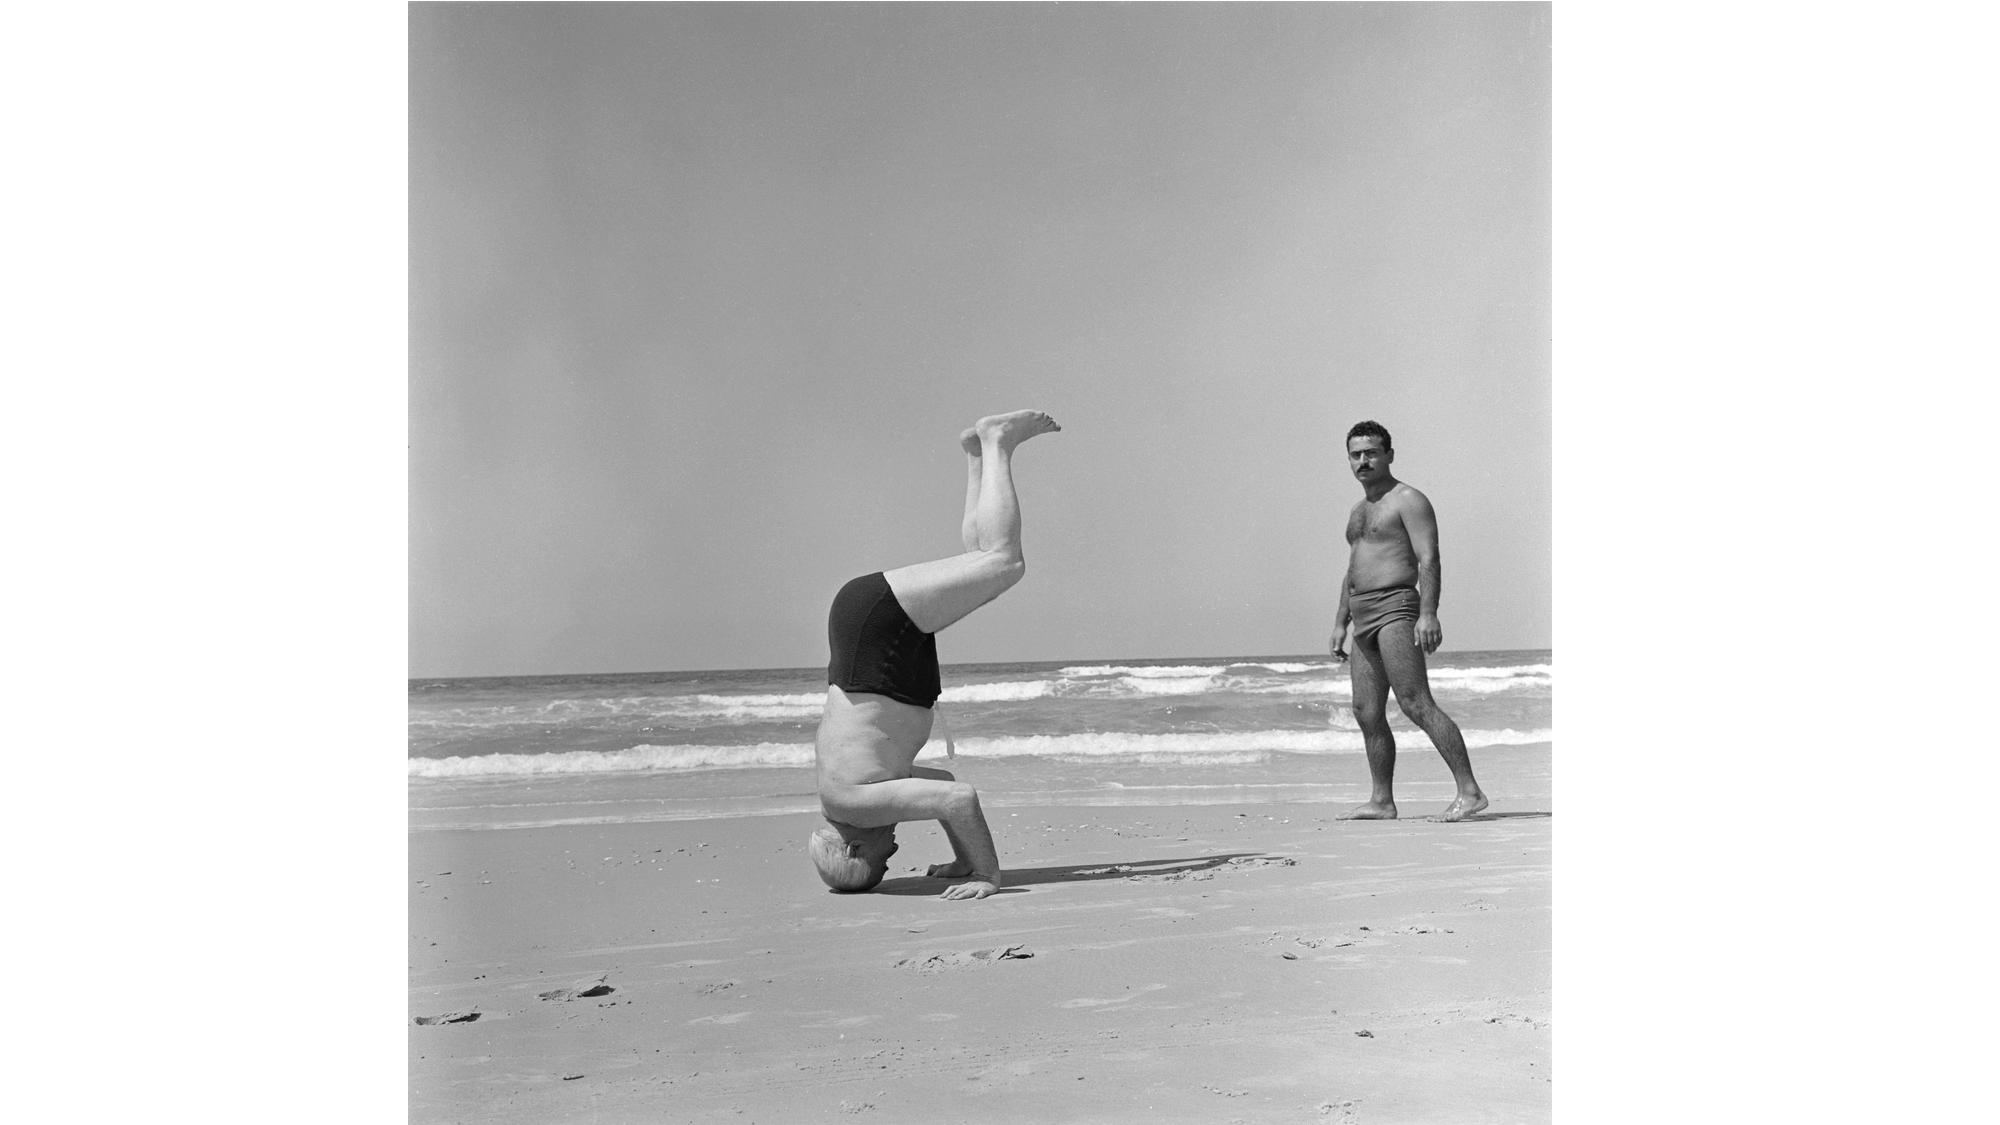 בן גוריון עומד על הראש בחוף הרצליה, 1957. צילום: פאול גולדמן